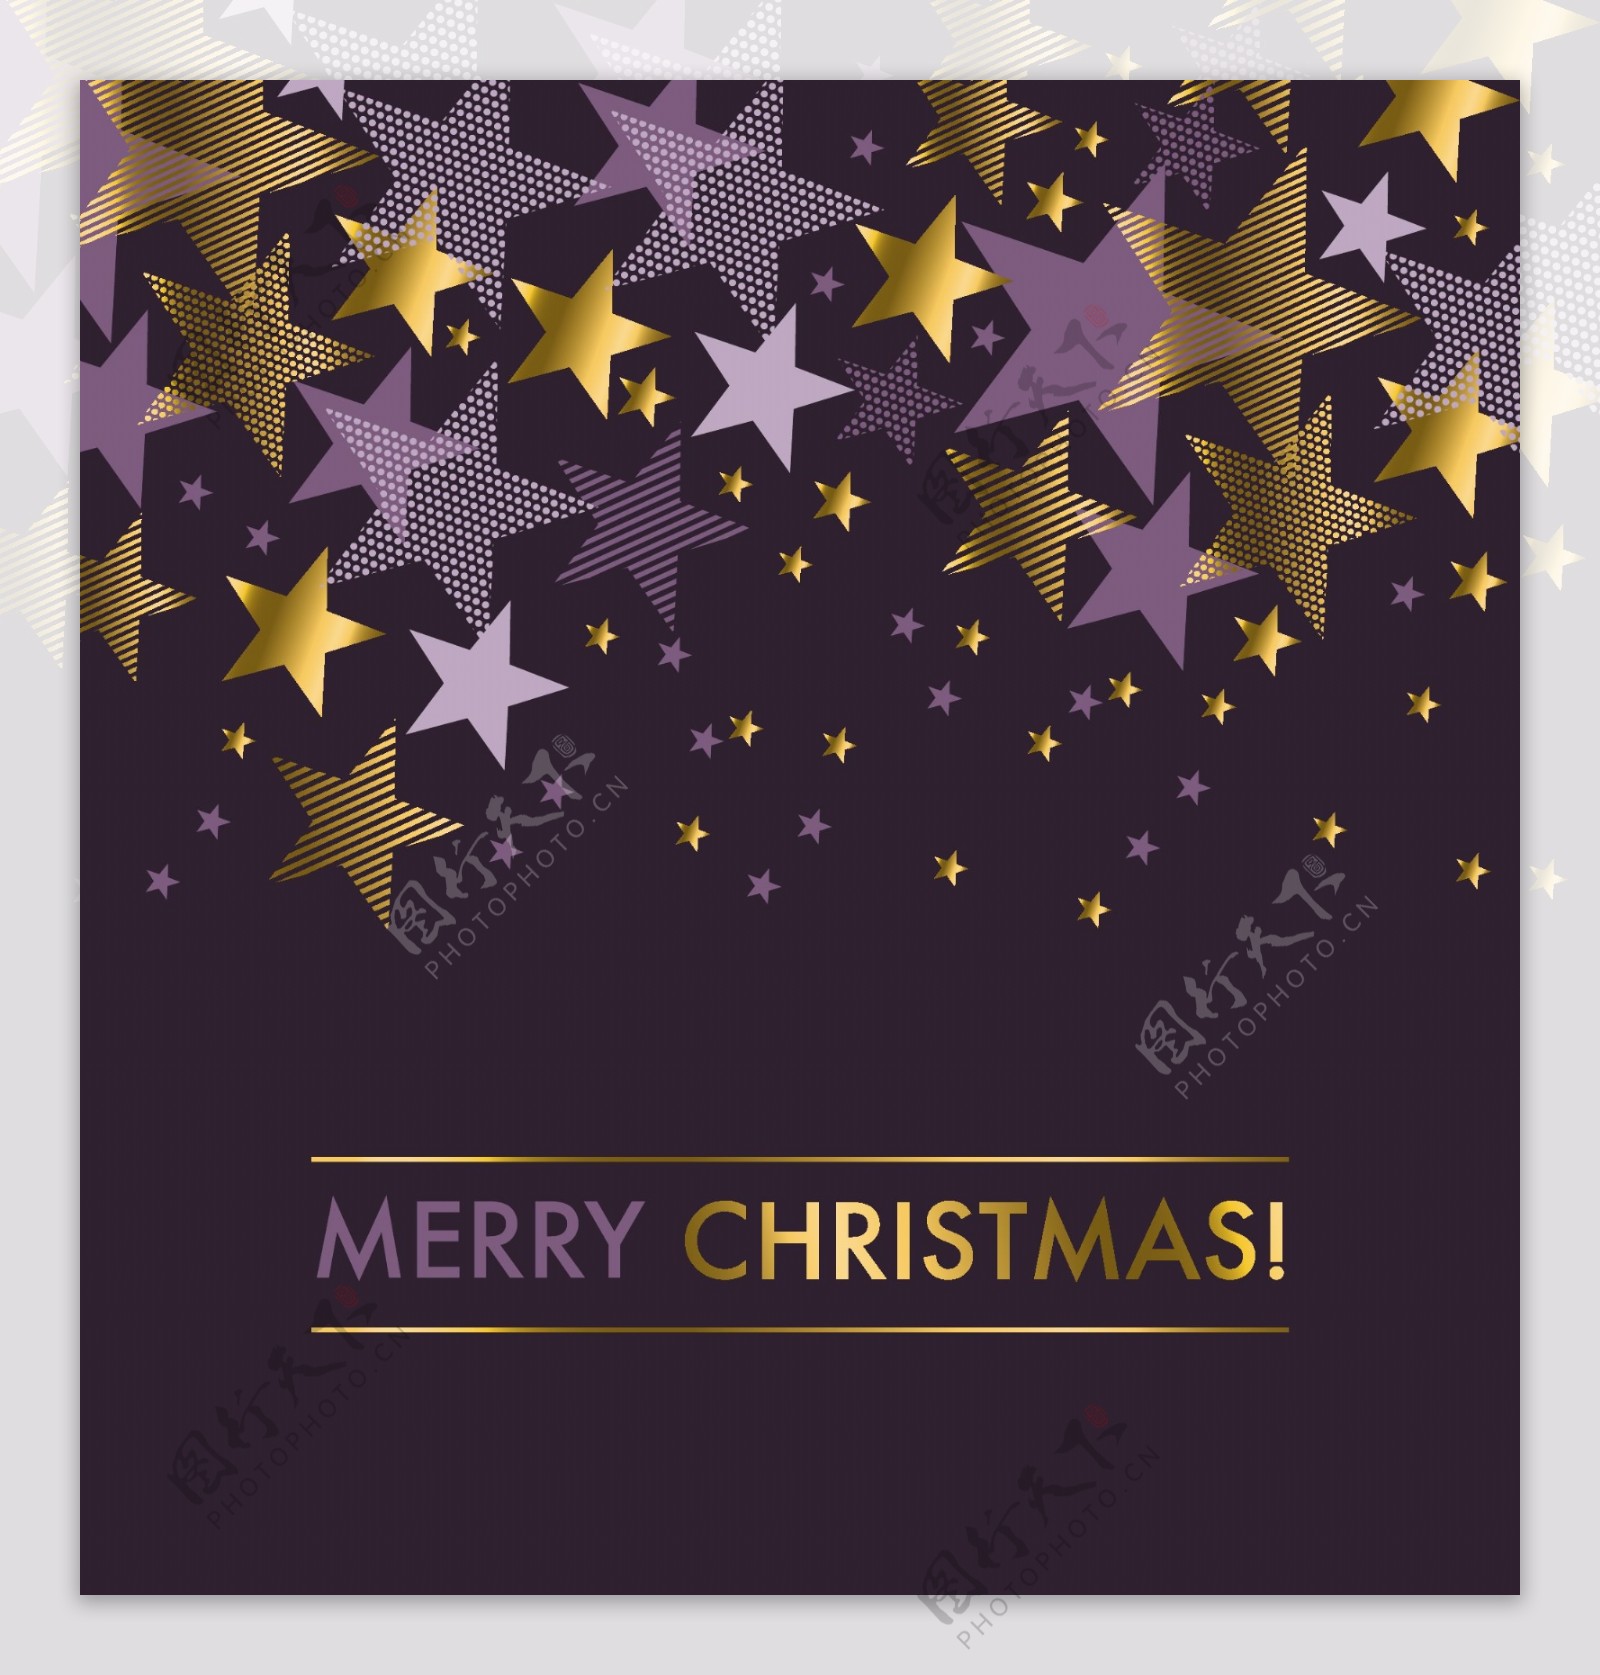 紫色五角星精致圣诞节底纹素材